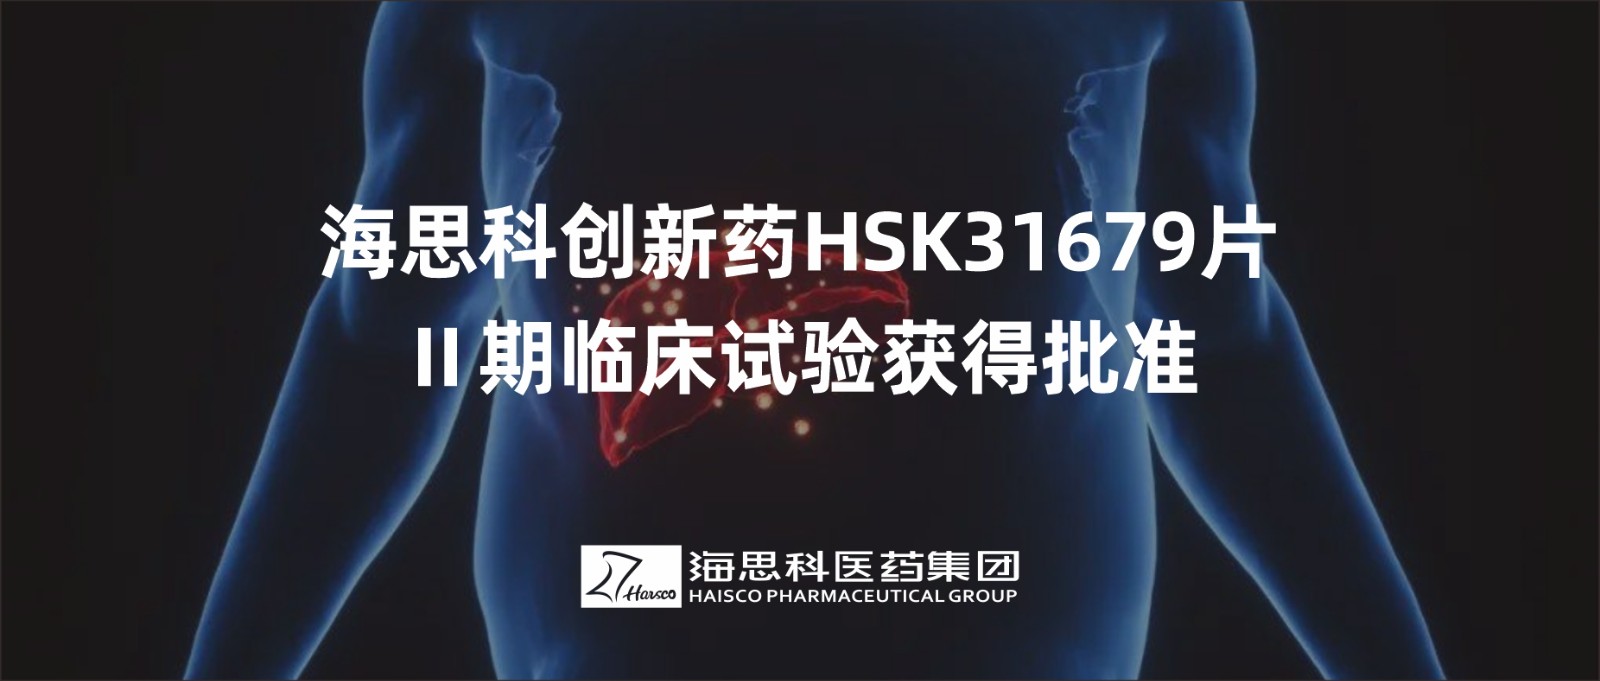 太阳集团tyc5997创新药HSK31679片Ⅱ期临床试验获得批准